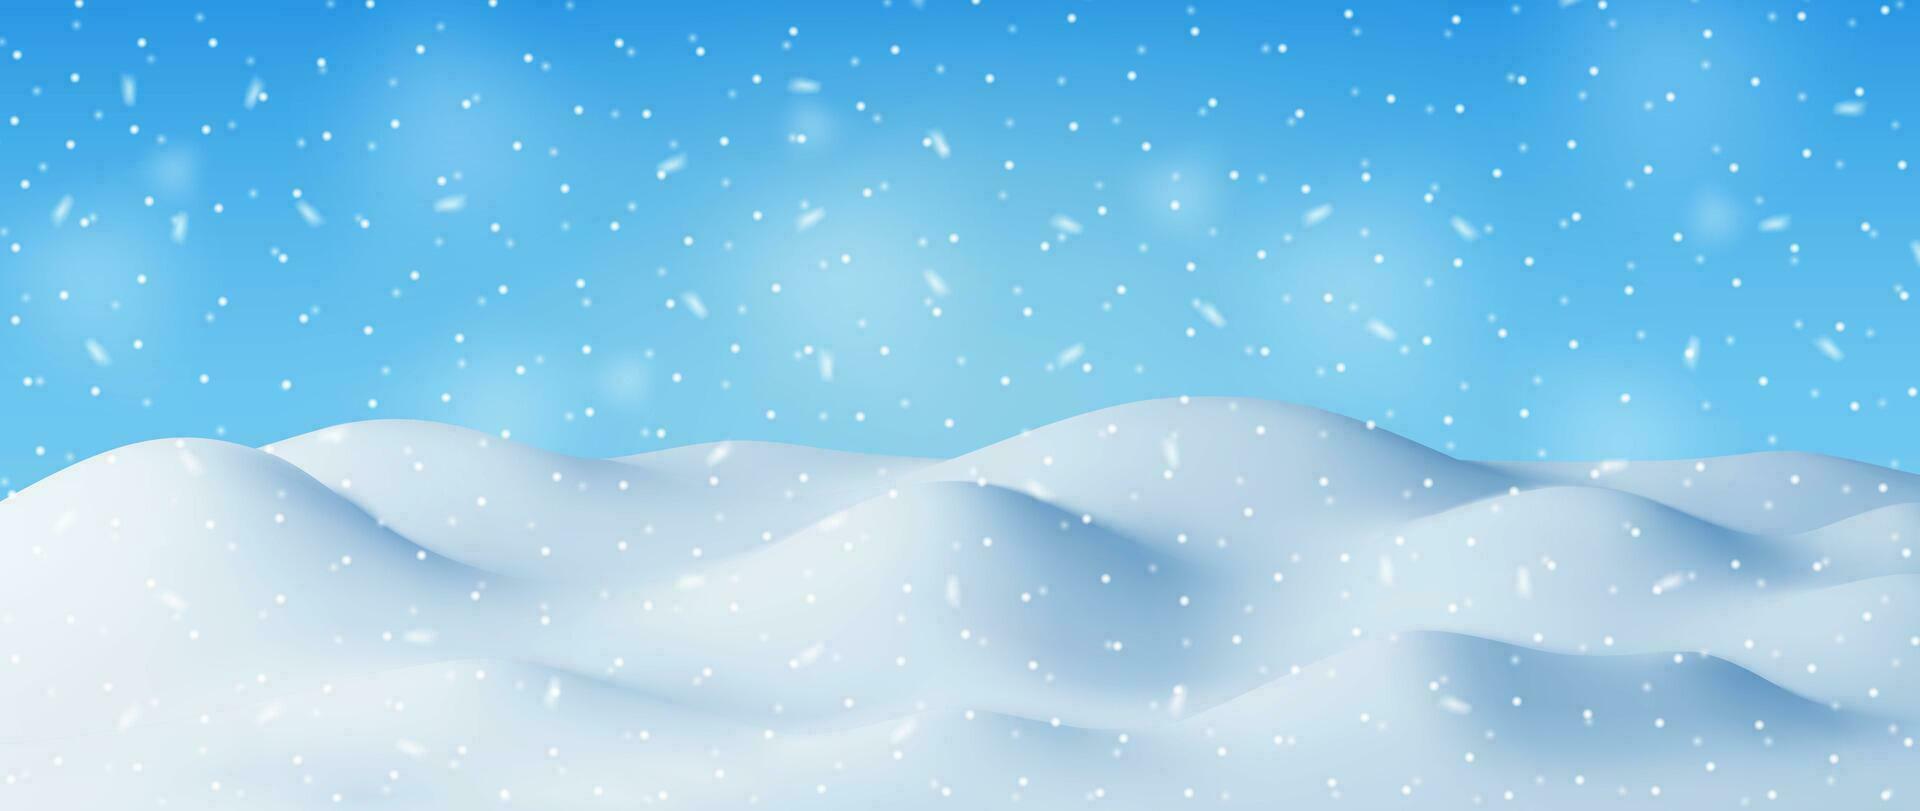 3d Winter Landschaft mit Schneeverwehungen und Schnee. machen Weihnachten Schnee driftet auf Blau Himmel Hintergrund. Winter Schnee Boden, Schneeverwehung Hügel, Eis Schicht. realistisch Vektor Illustration